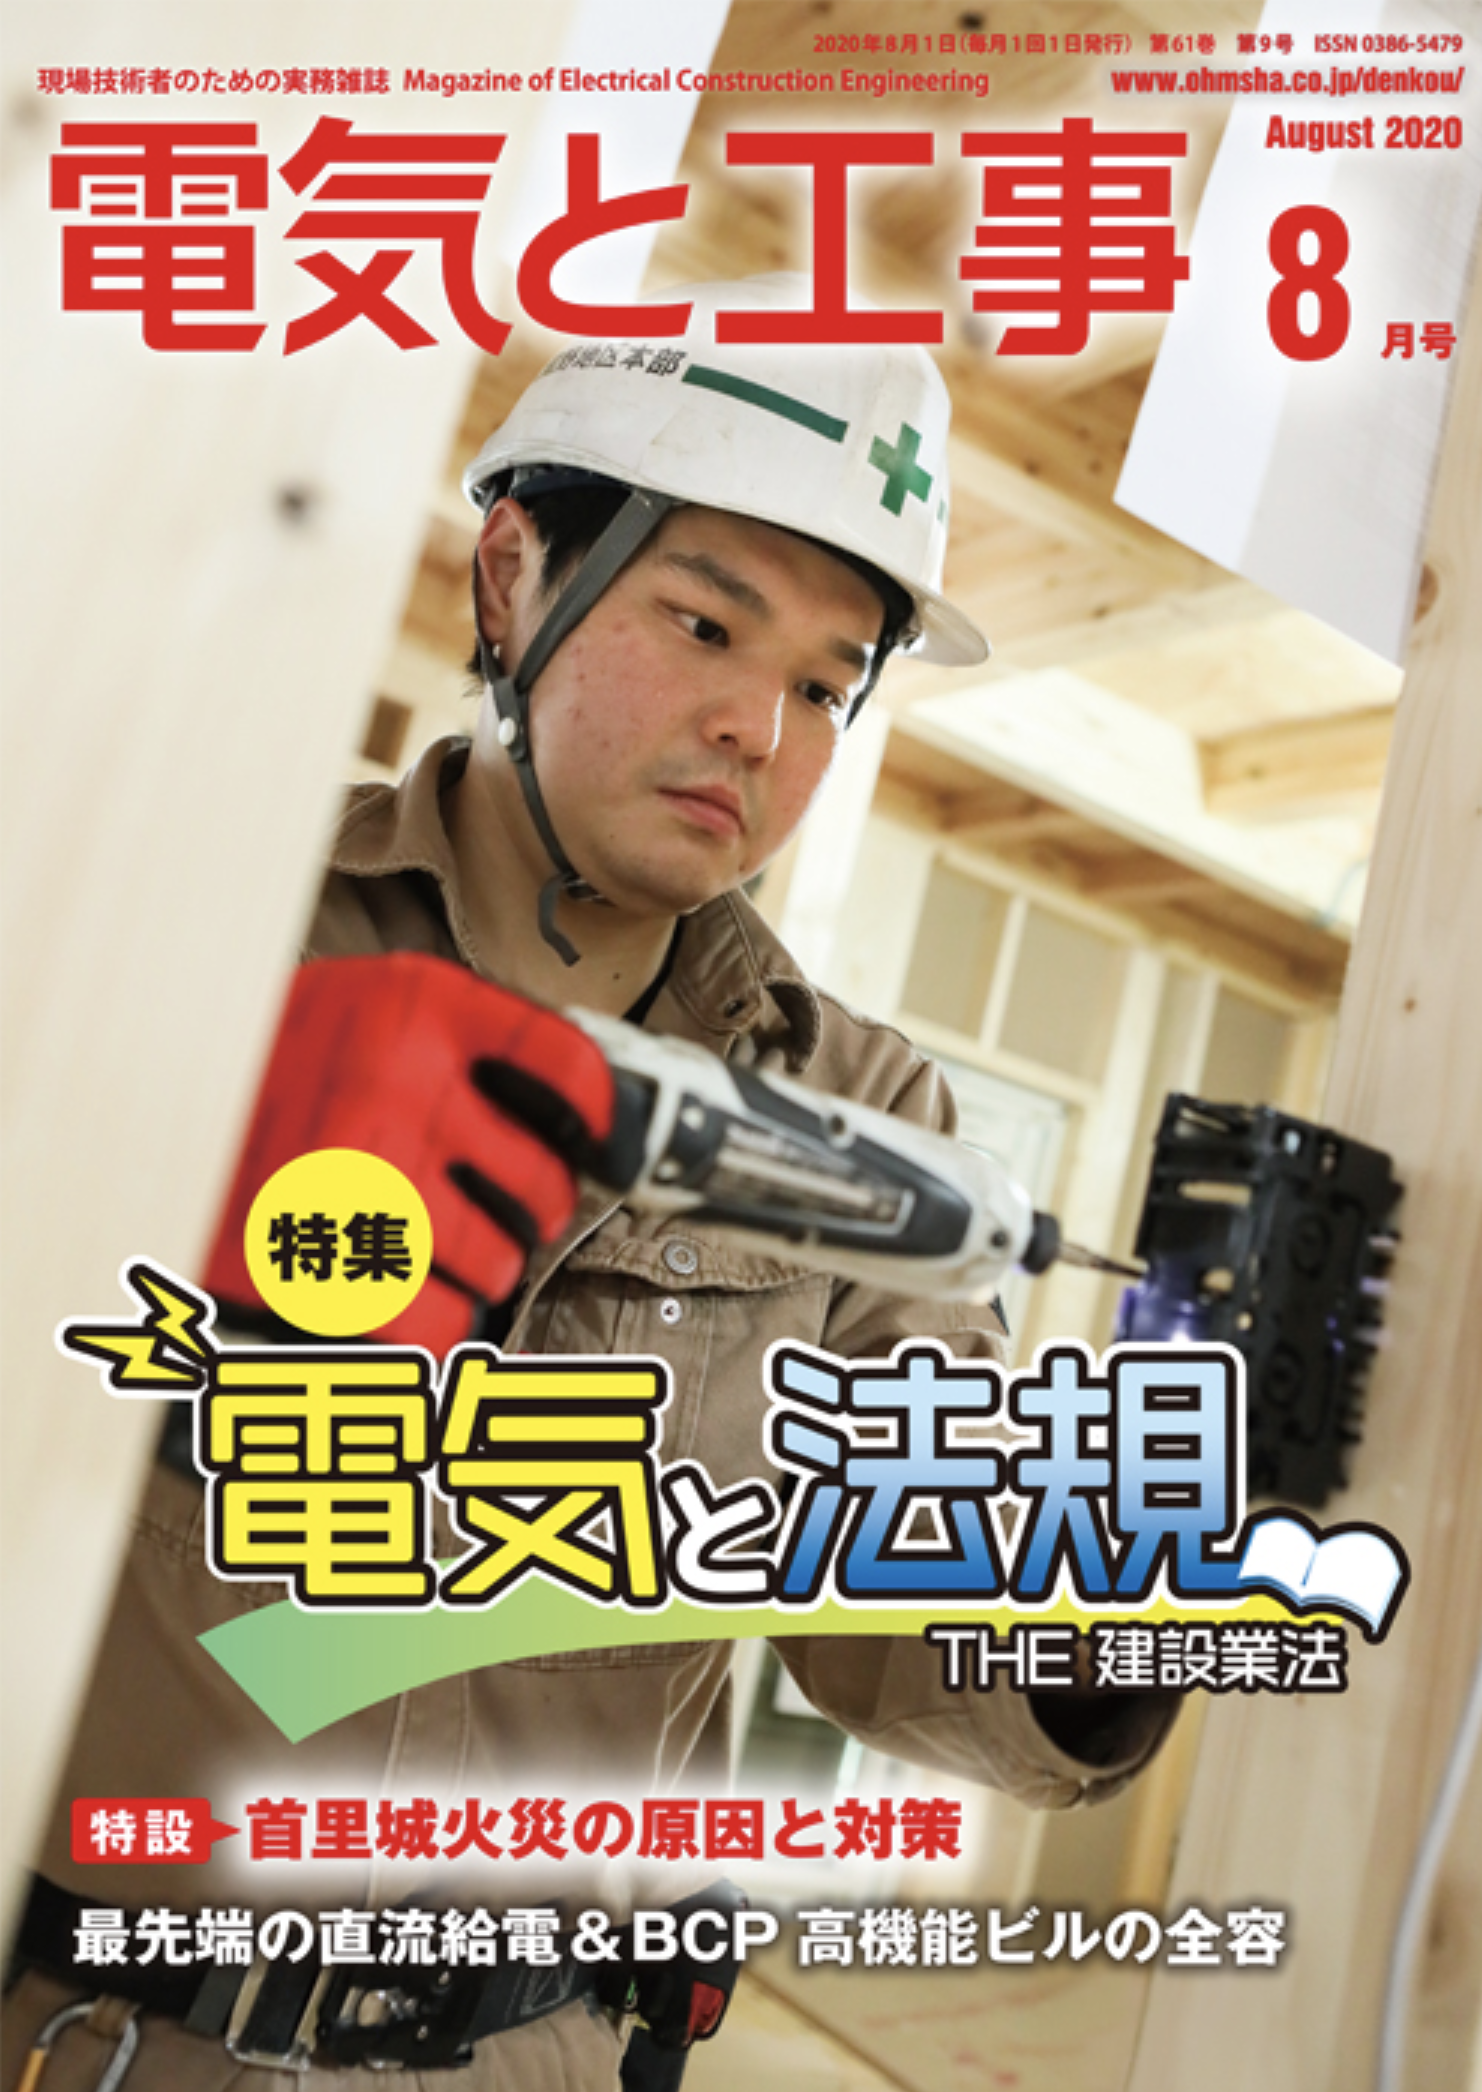 【新刊トピックス 2020年7月】電気と工事 2020年8月号 (第61巻第9号通巻803号)の画像